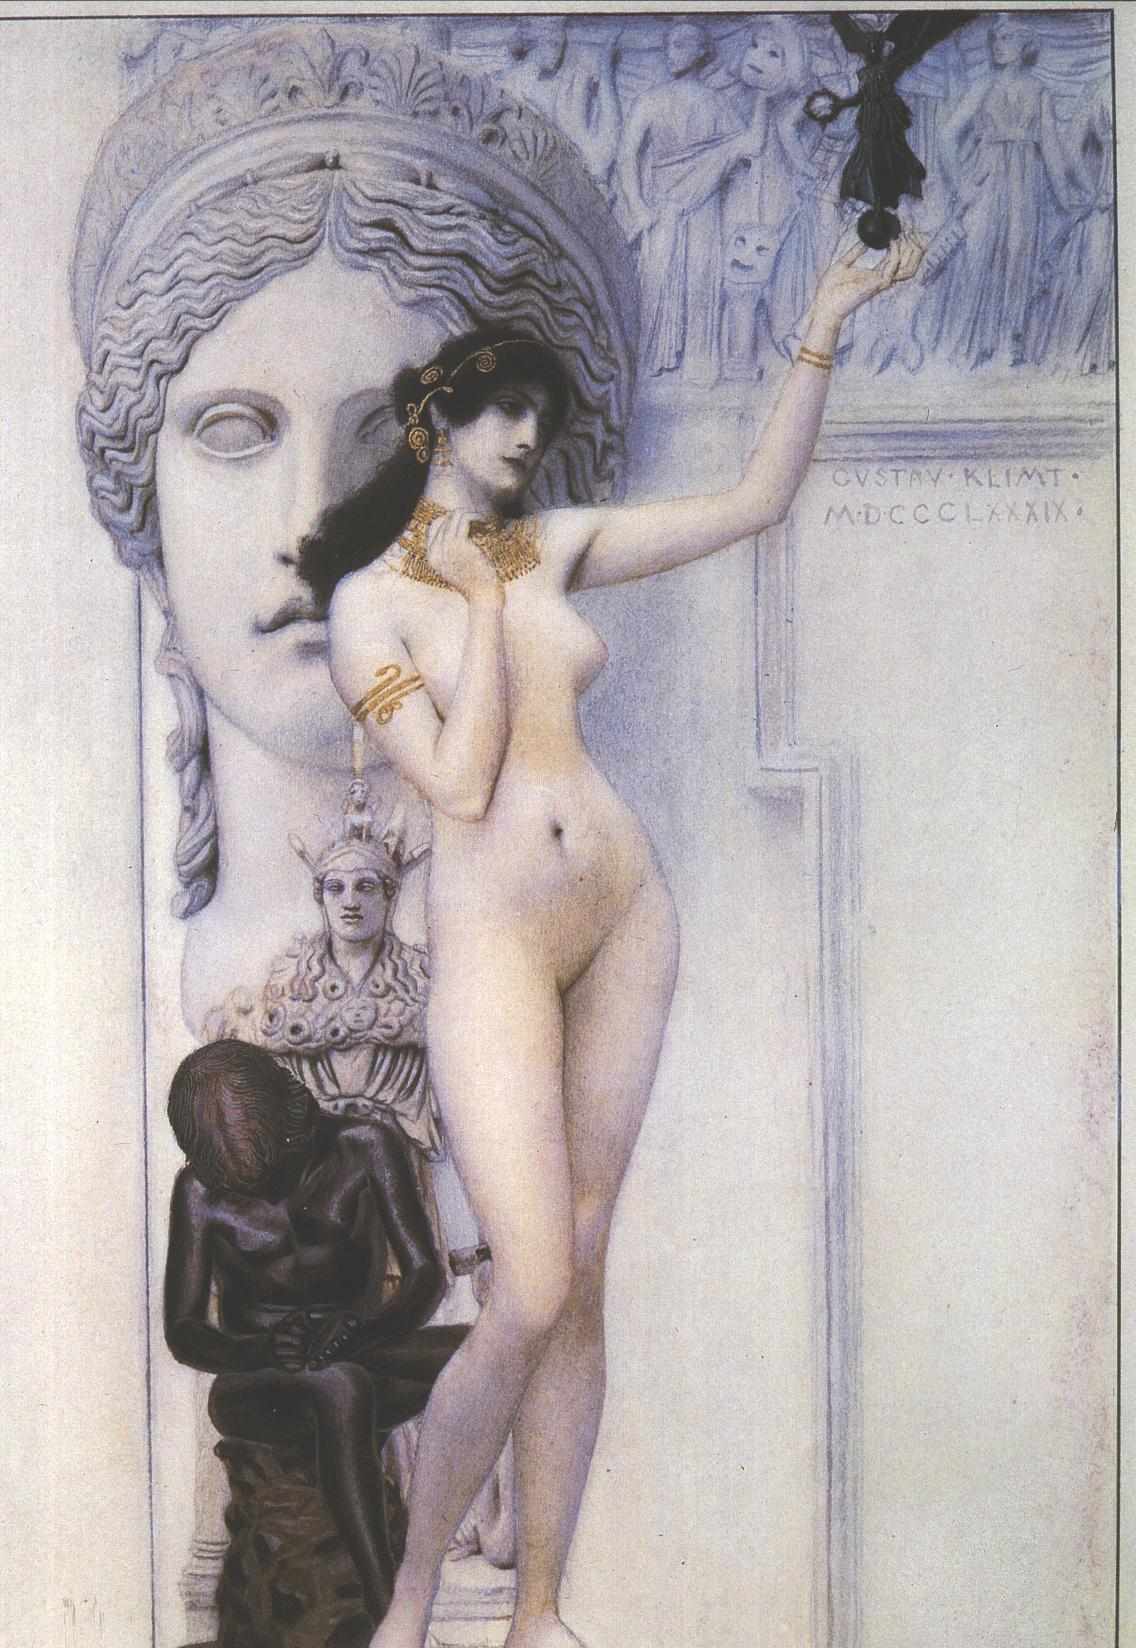 雕像的寓意 by 古斯塔夫· 克林姆特画 - 1889 